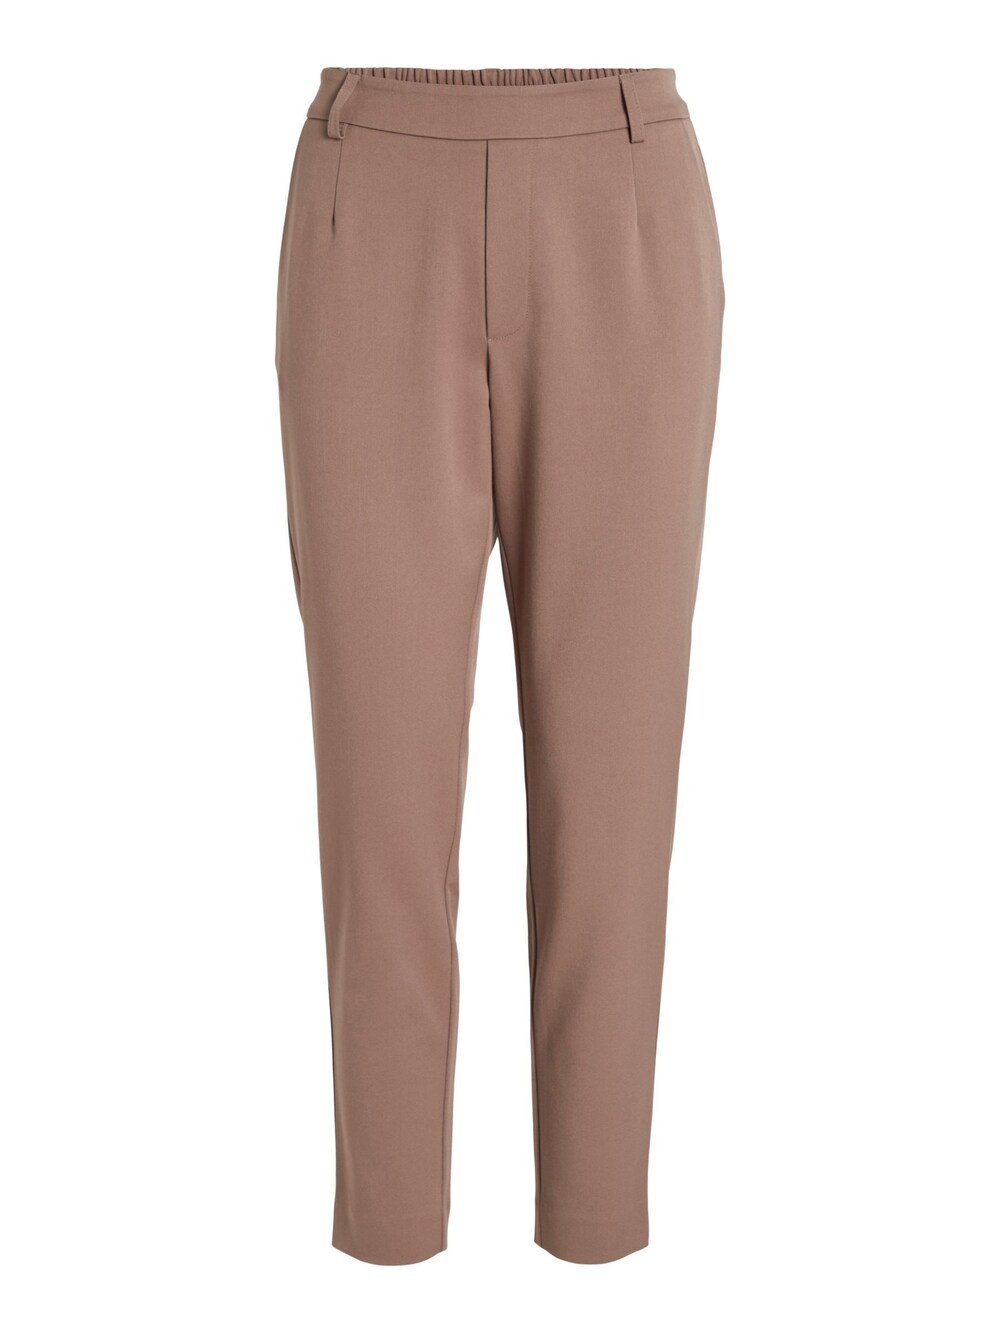 Узкие брюки со складками спереди VILA Varone, коричневый